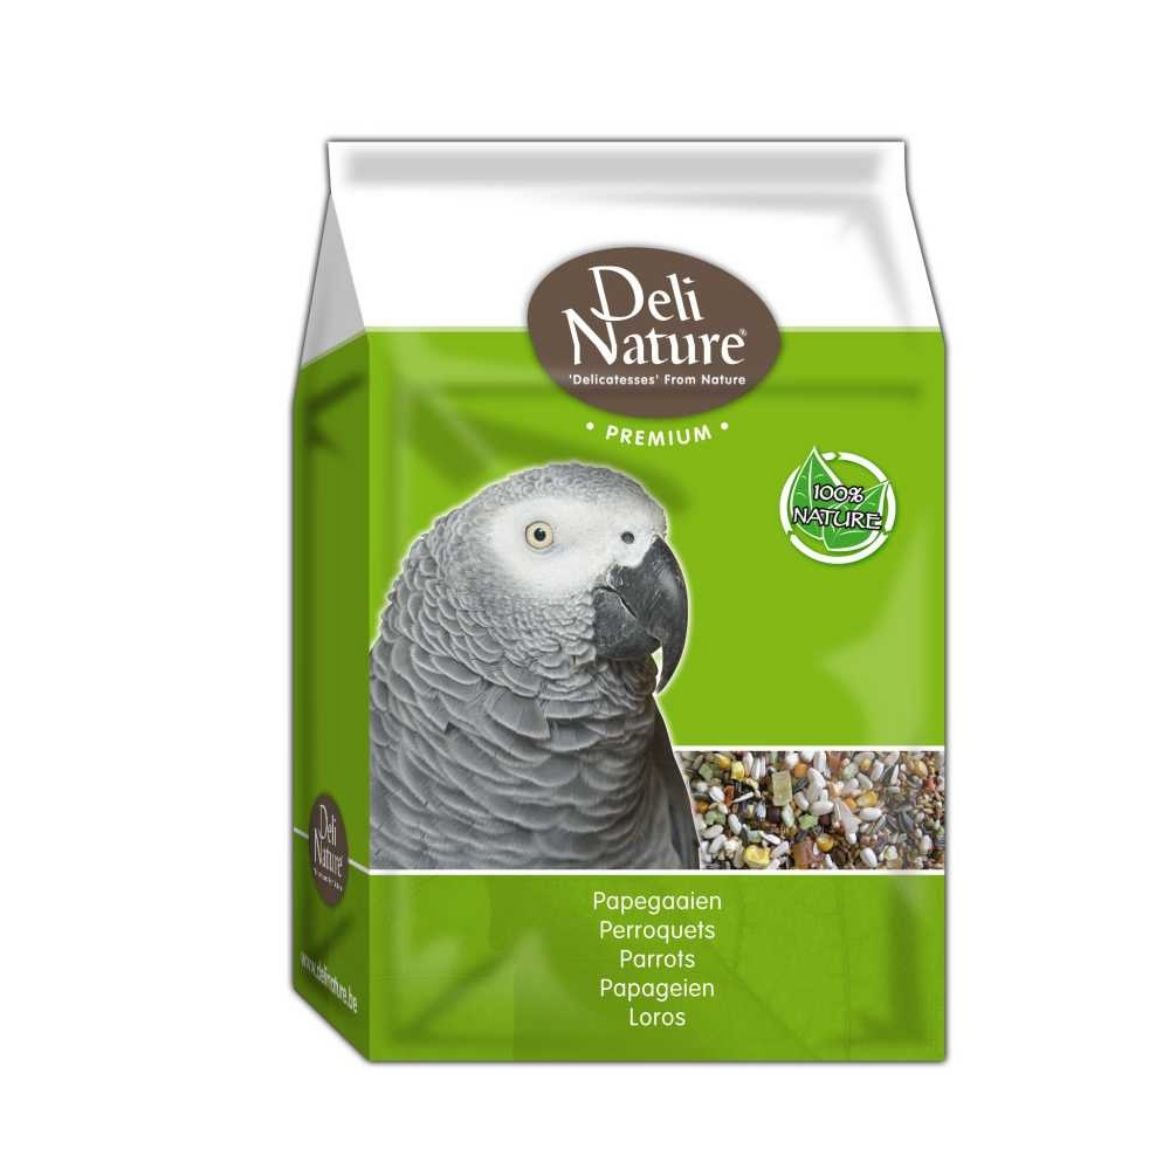 Obrázek z Deli Nature Premium PARROTS velký papoušek 3 kg 